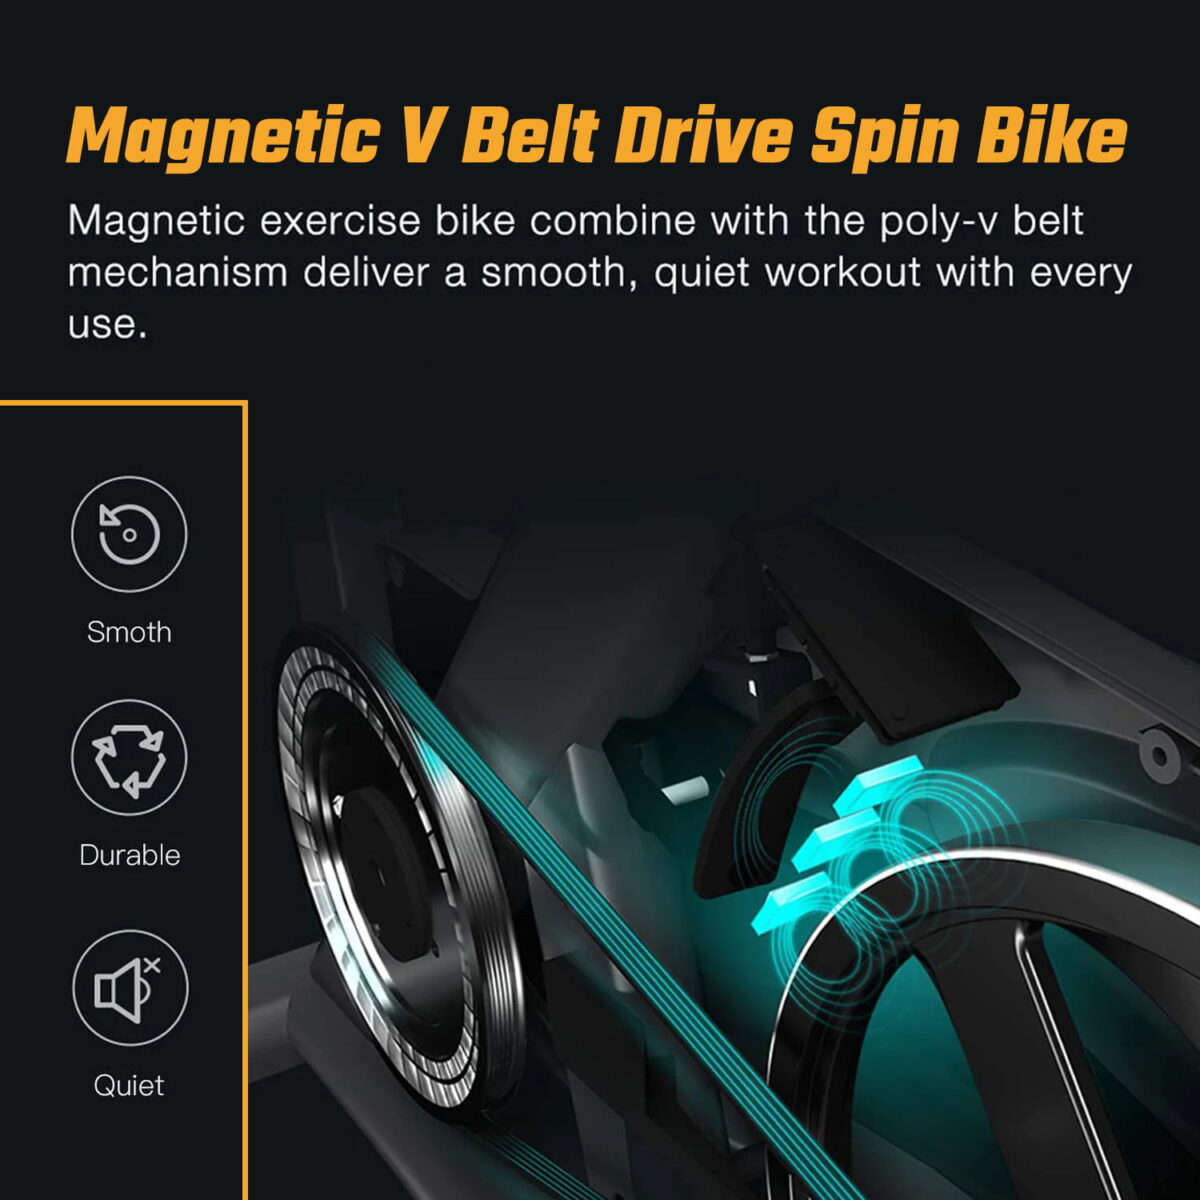 Magnetic V belt Drive Spin Bike